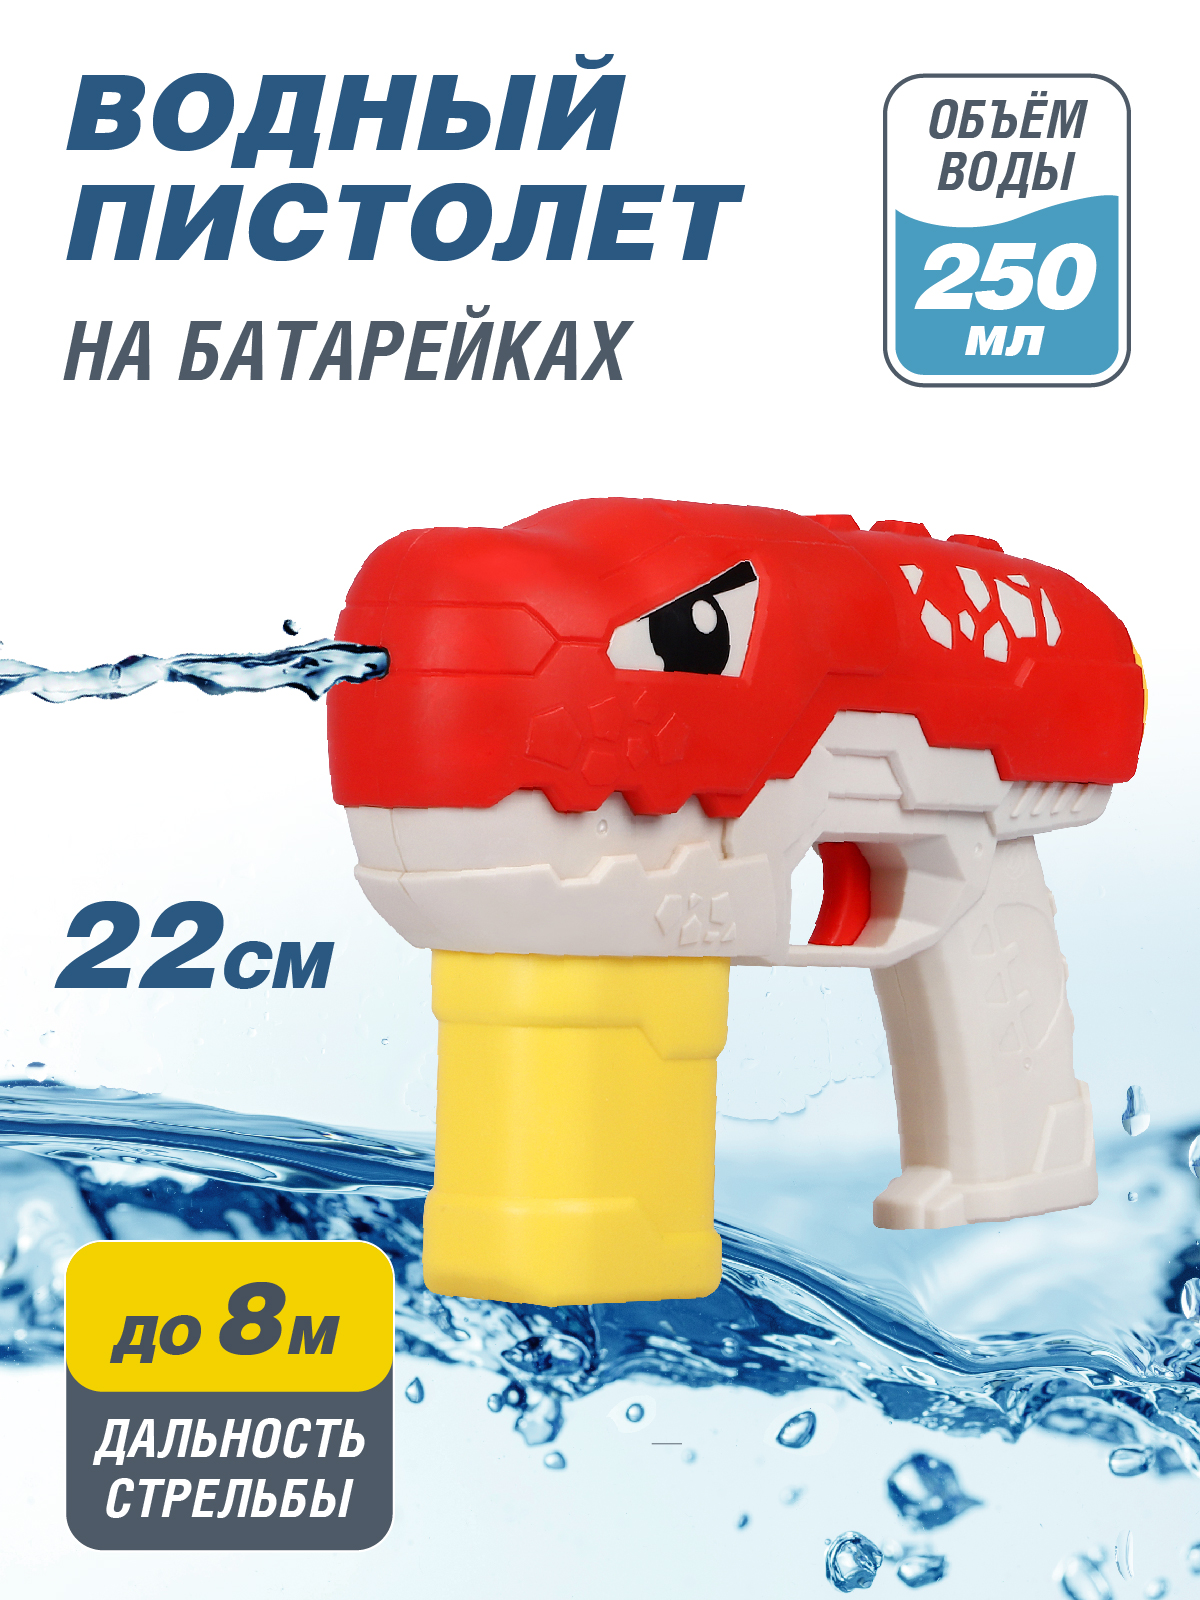 Водяное игрушечное оружие Маленький воин на батарейках, JB0211500 водяное игрушечное оружие пистолет рюкзак jb0211490